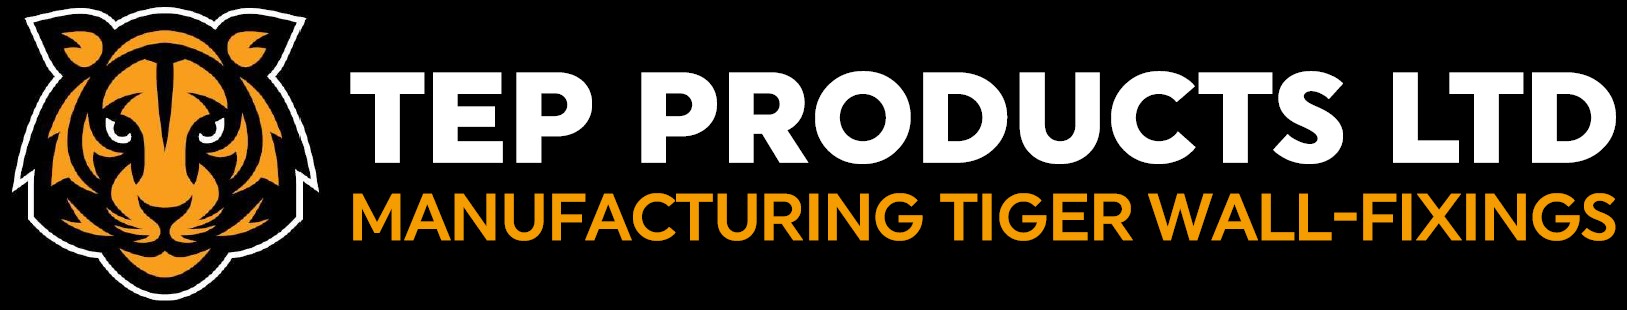 TEP Products Ltd